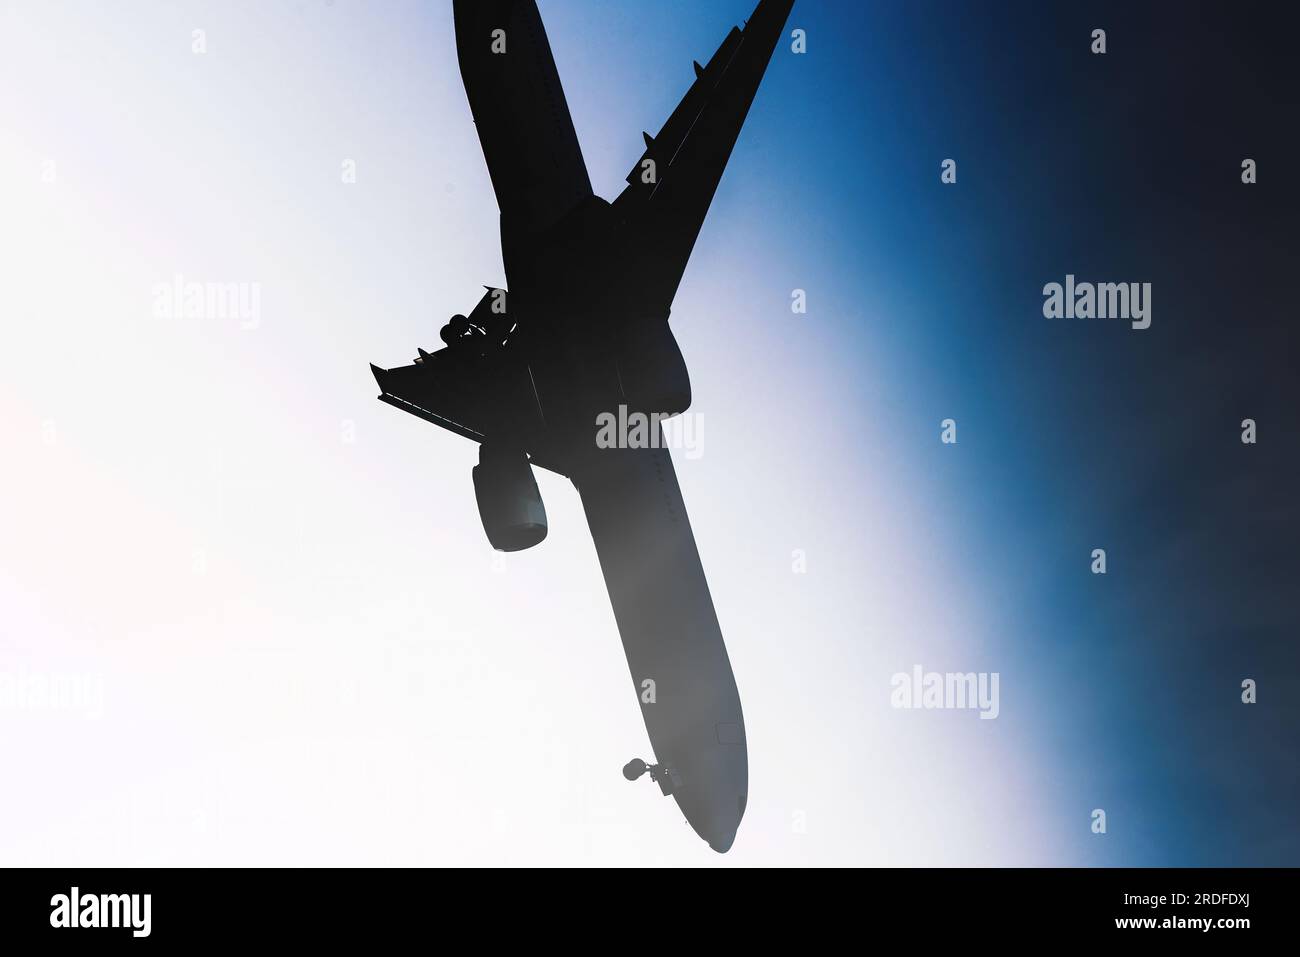 Silhouette d'un grand avion s'écrasant avec le nez plongeant au sol contre le ciel bleu Banque D'Images